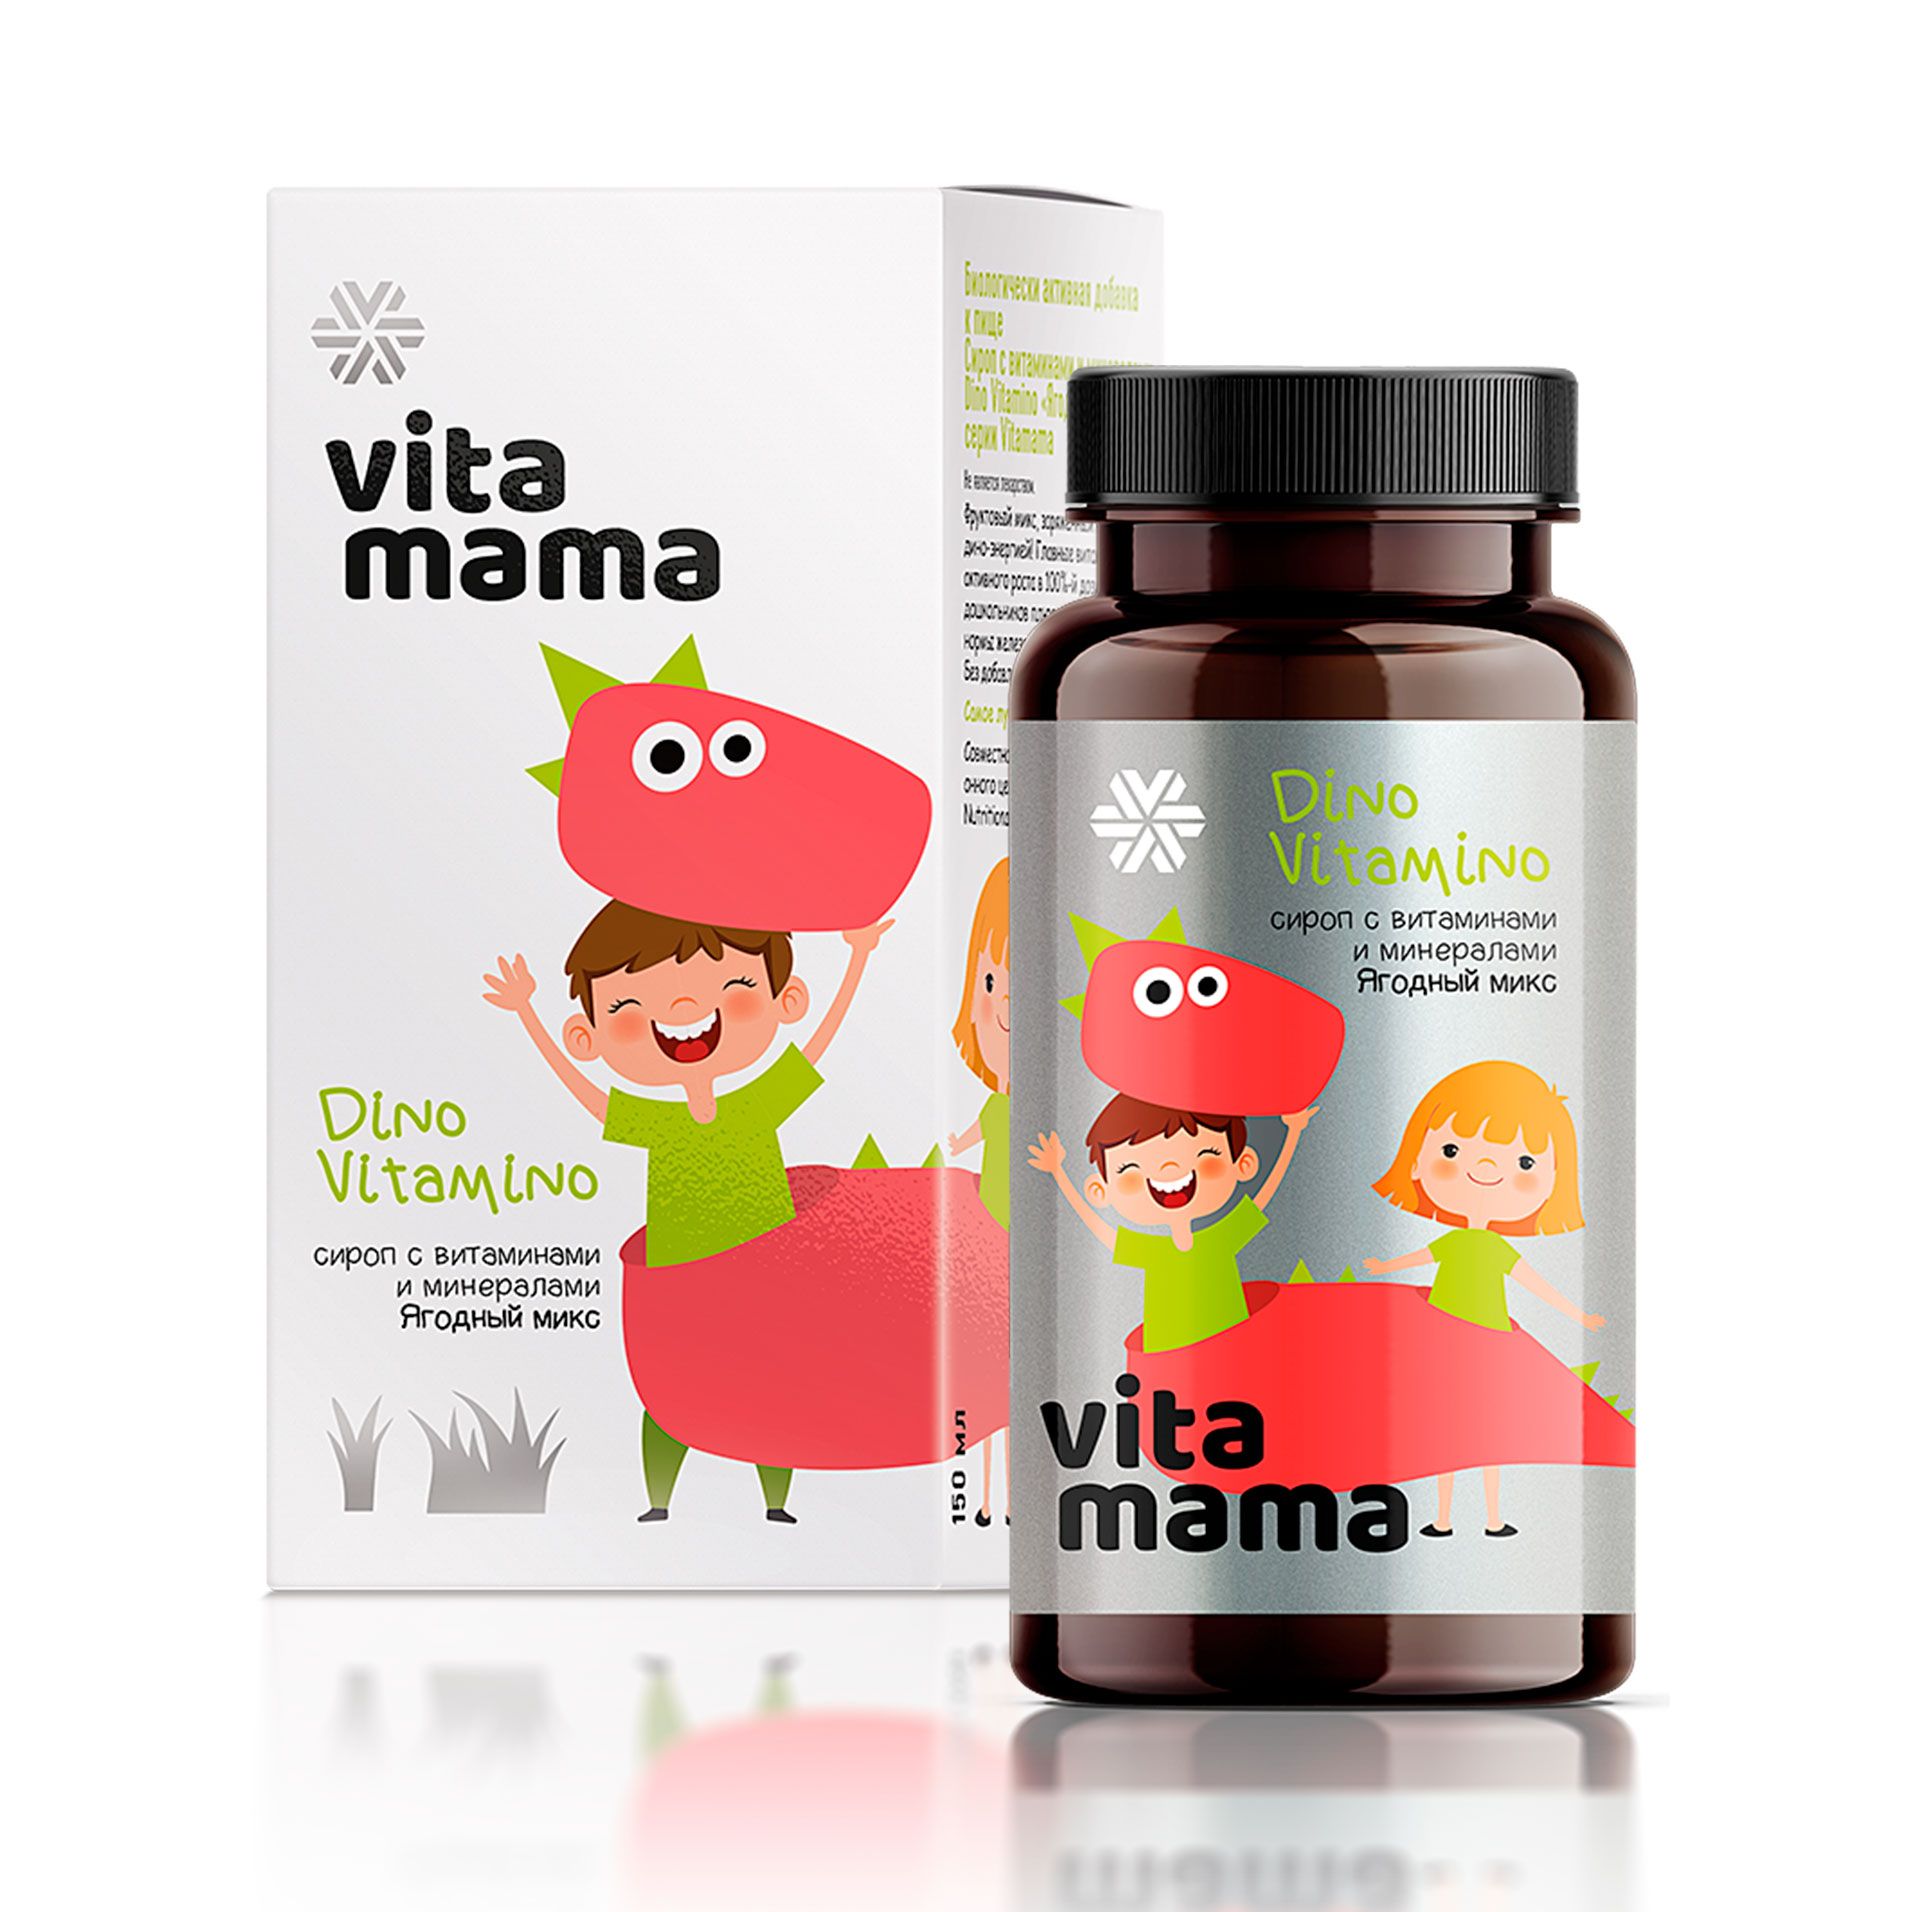 Dino Vitamino, ягодный сироп с витаминами и минералами